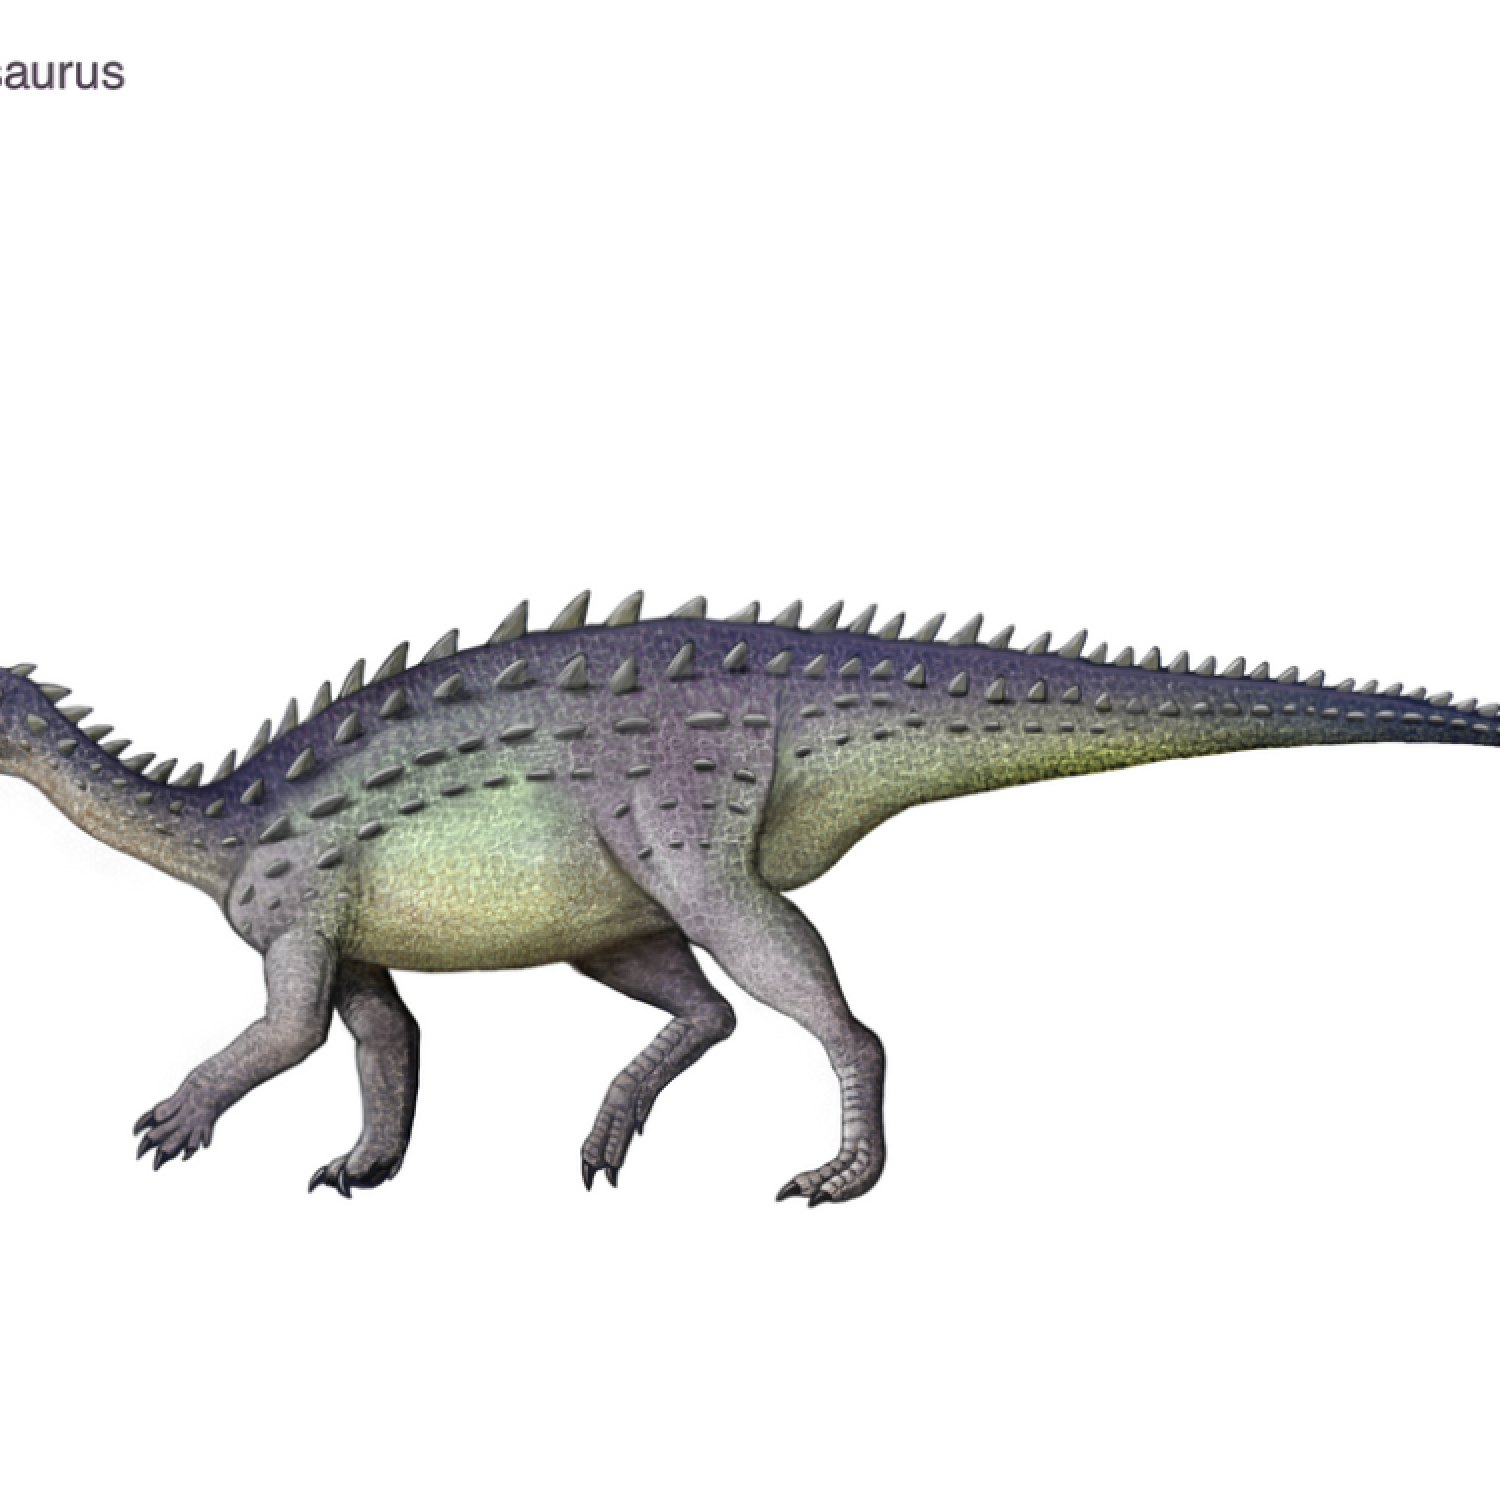 Lusitanosaurus